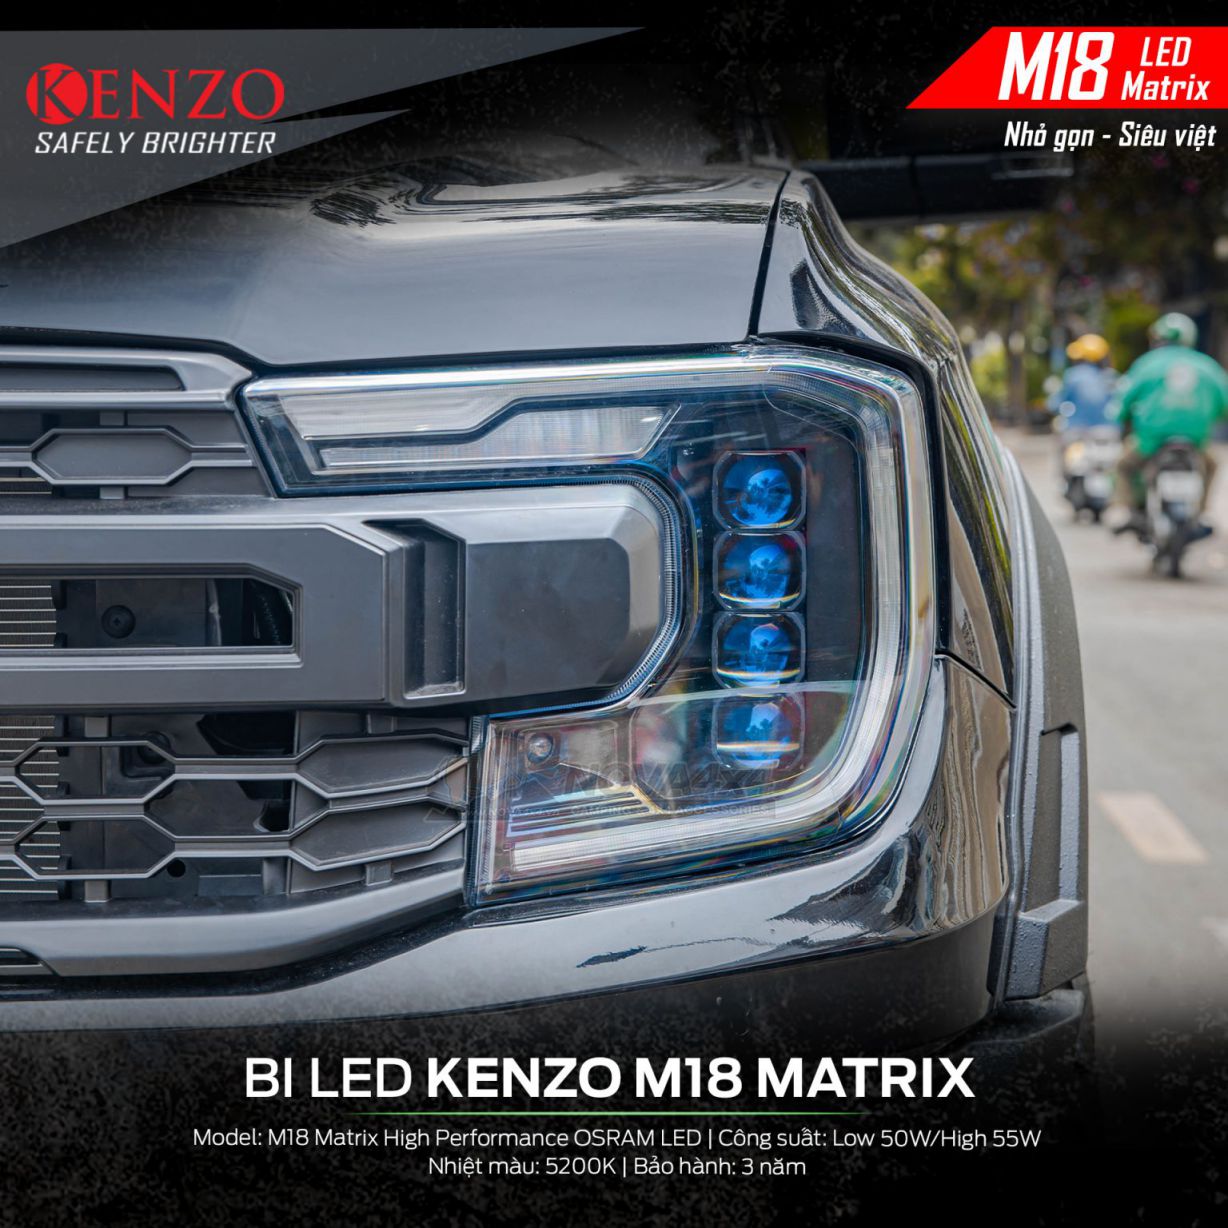 Ranger XLS nâng cấp 4 cặp Bi Led Kenzo M18 Matrix